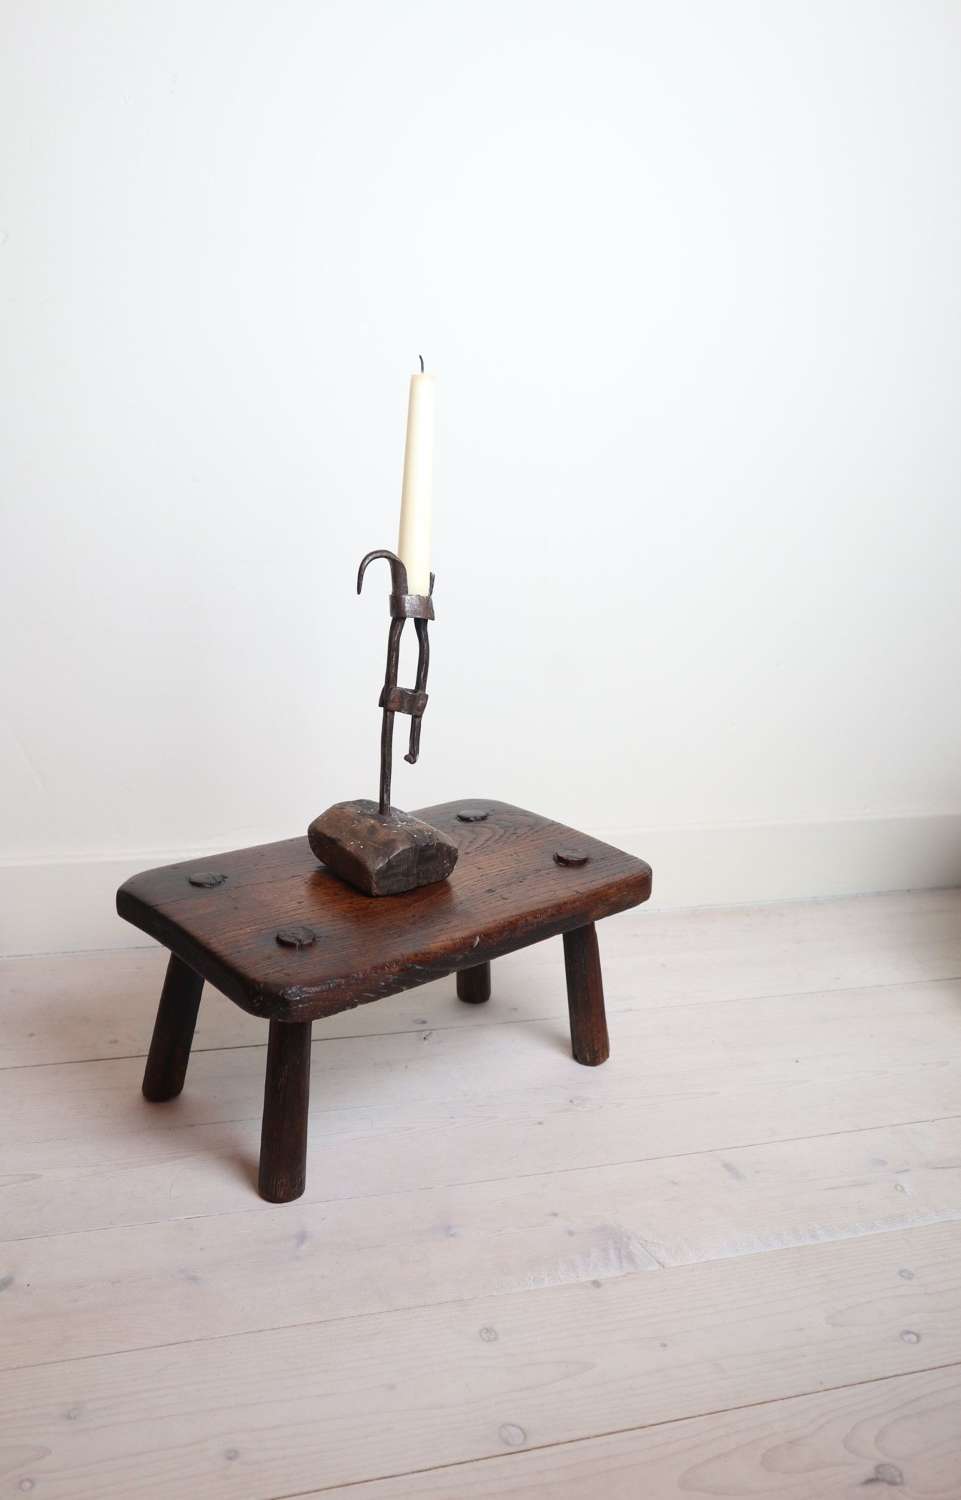 Swedish 18th Century wrought iron stump-stake candlestick.